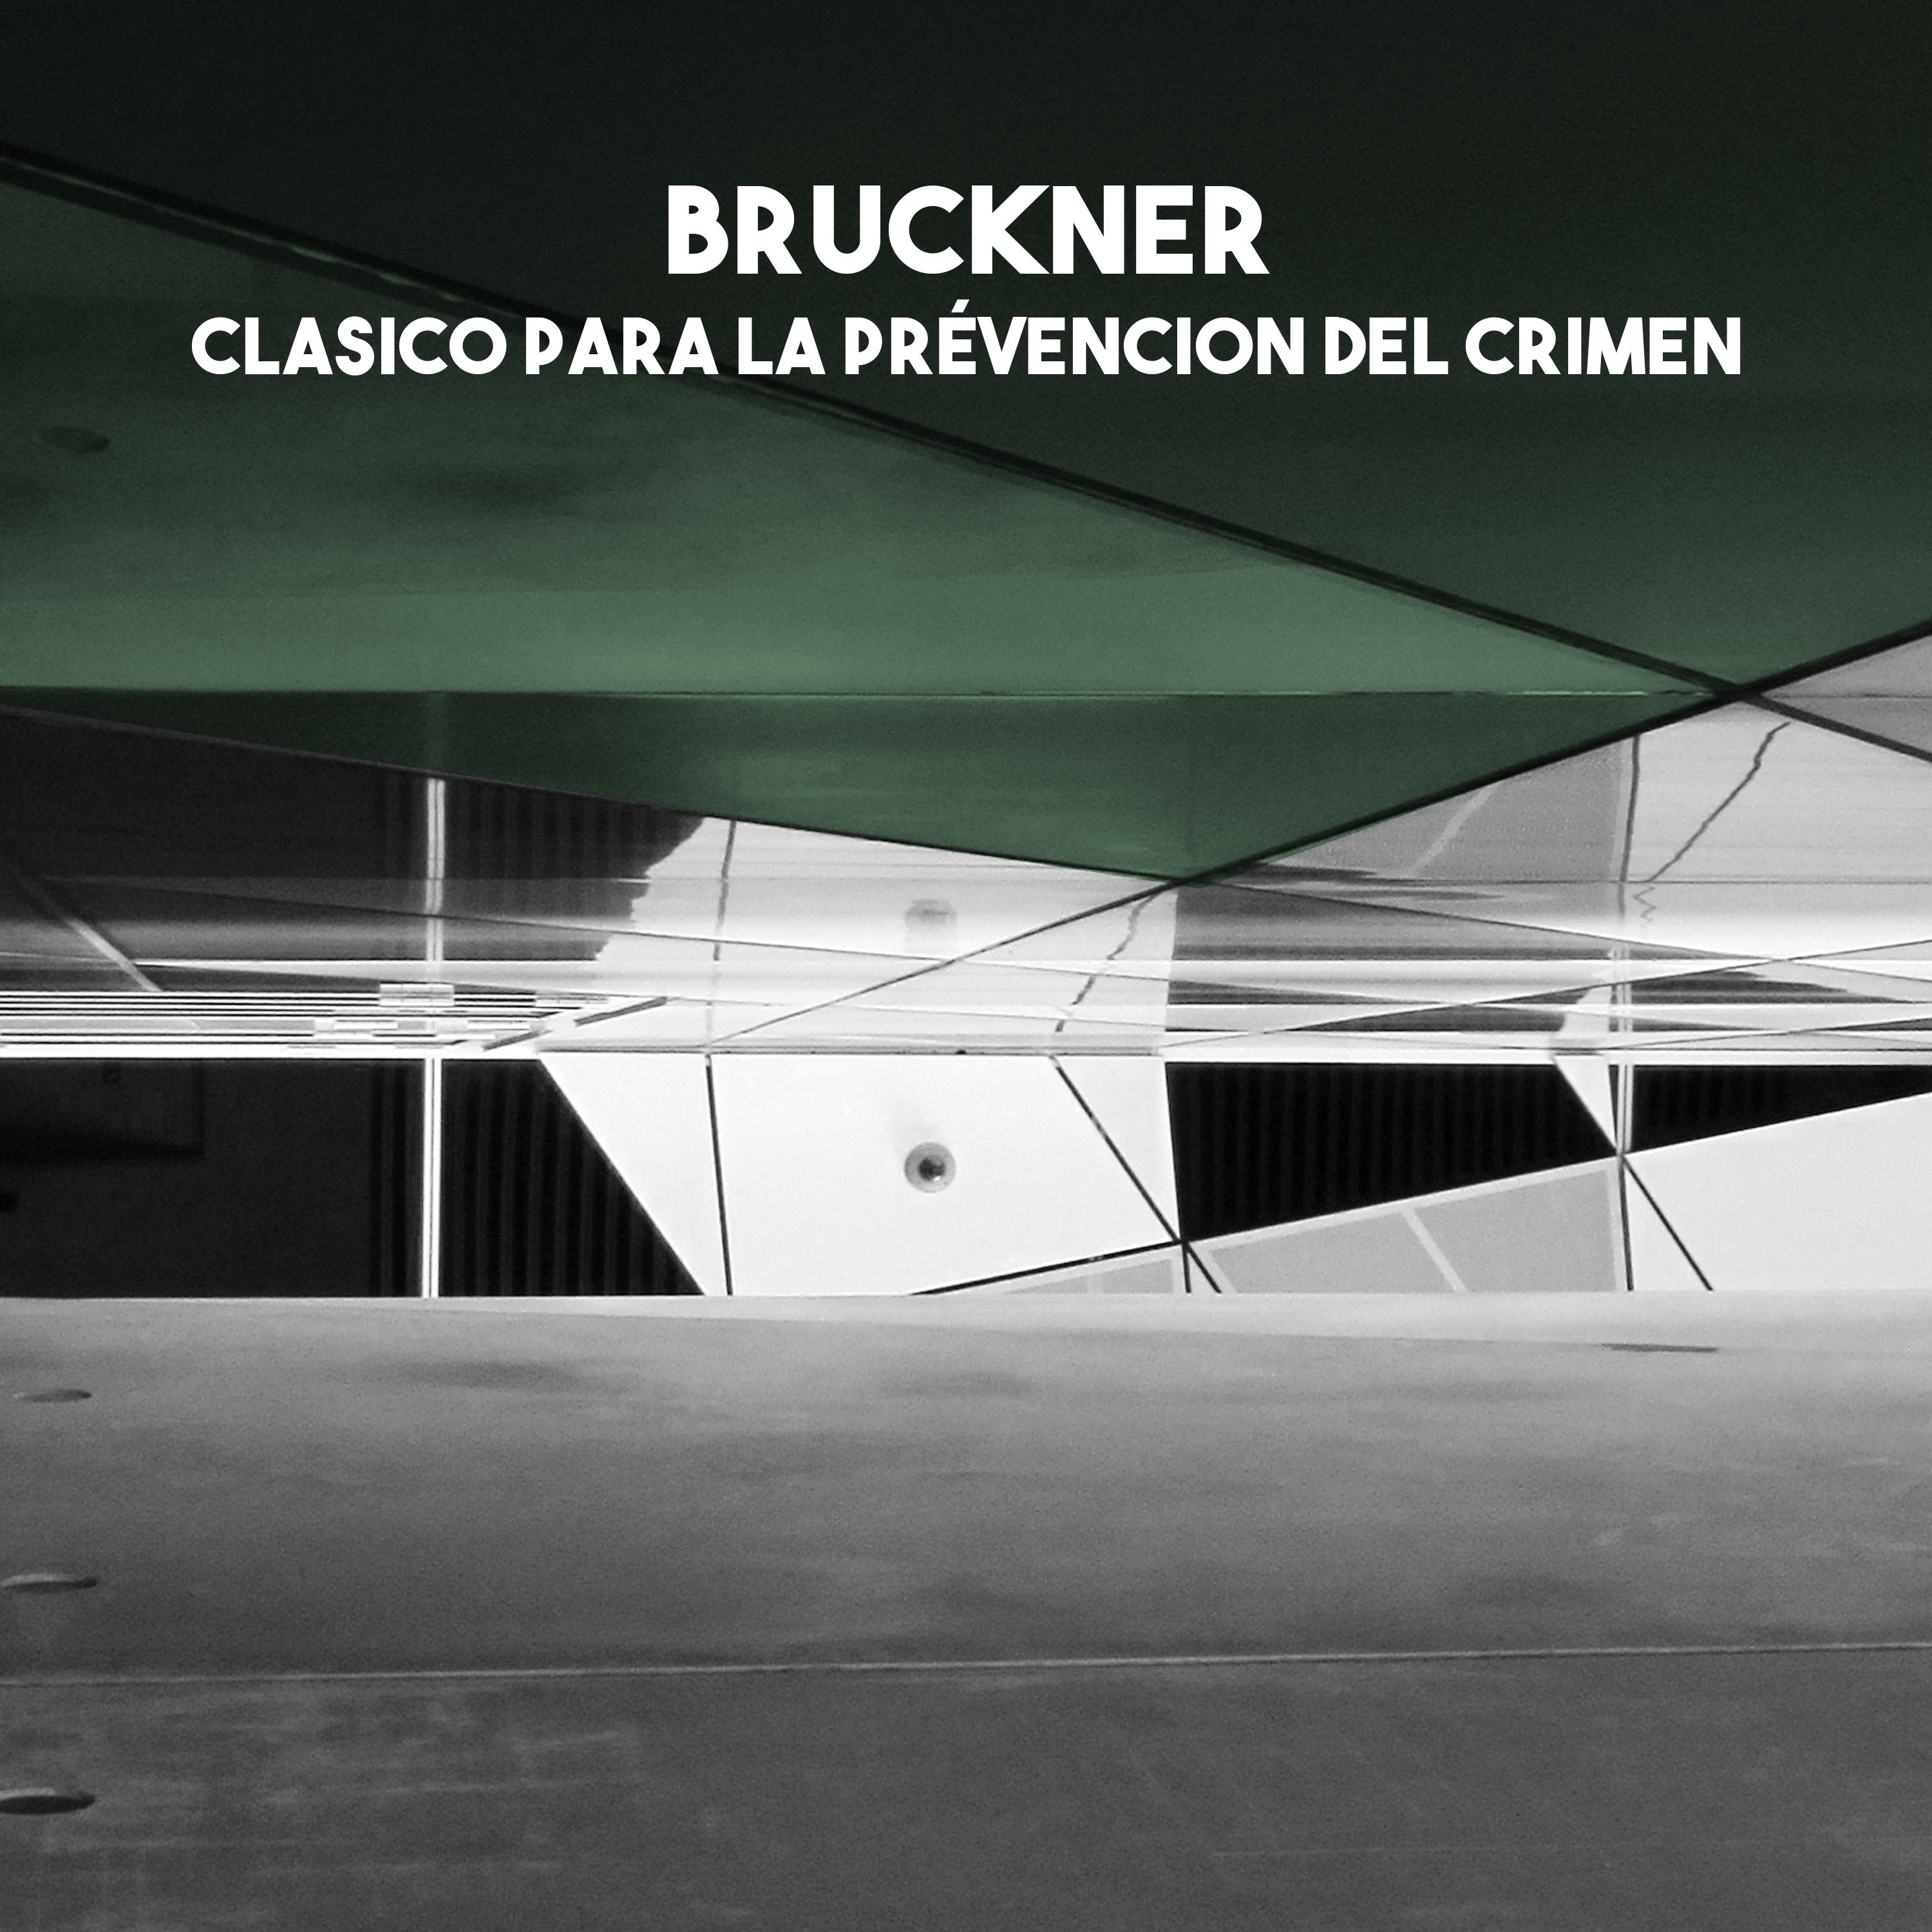 Bruckner: Clasico para la pre vencion del crimen